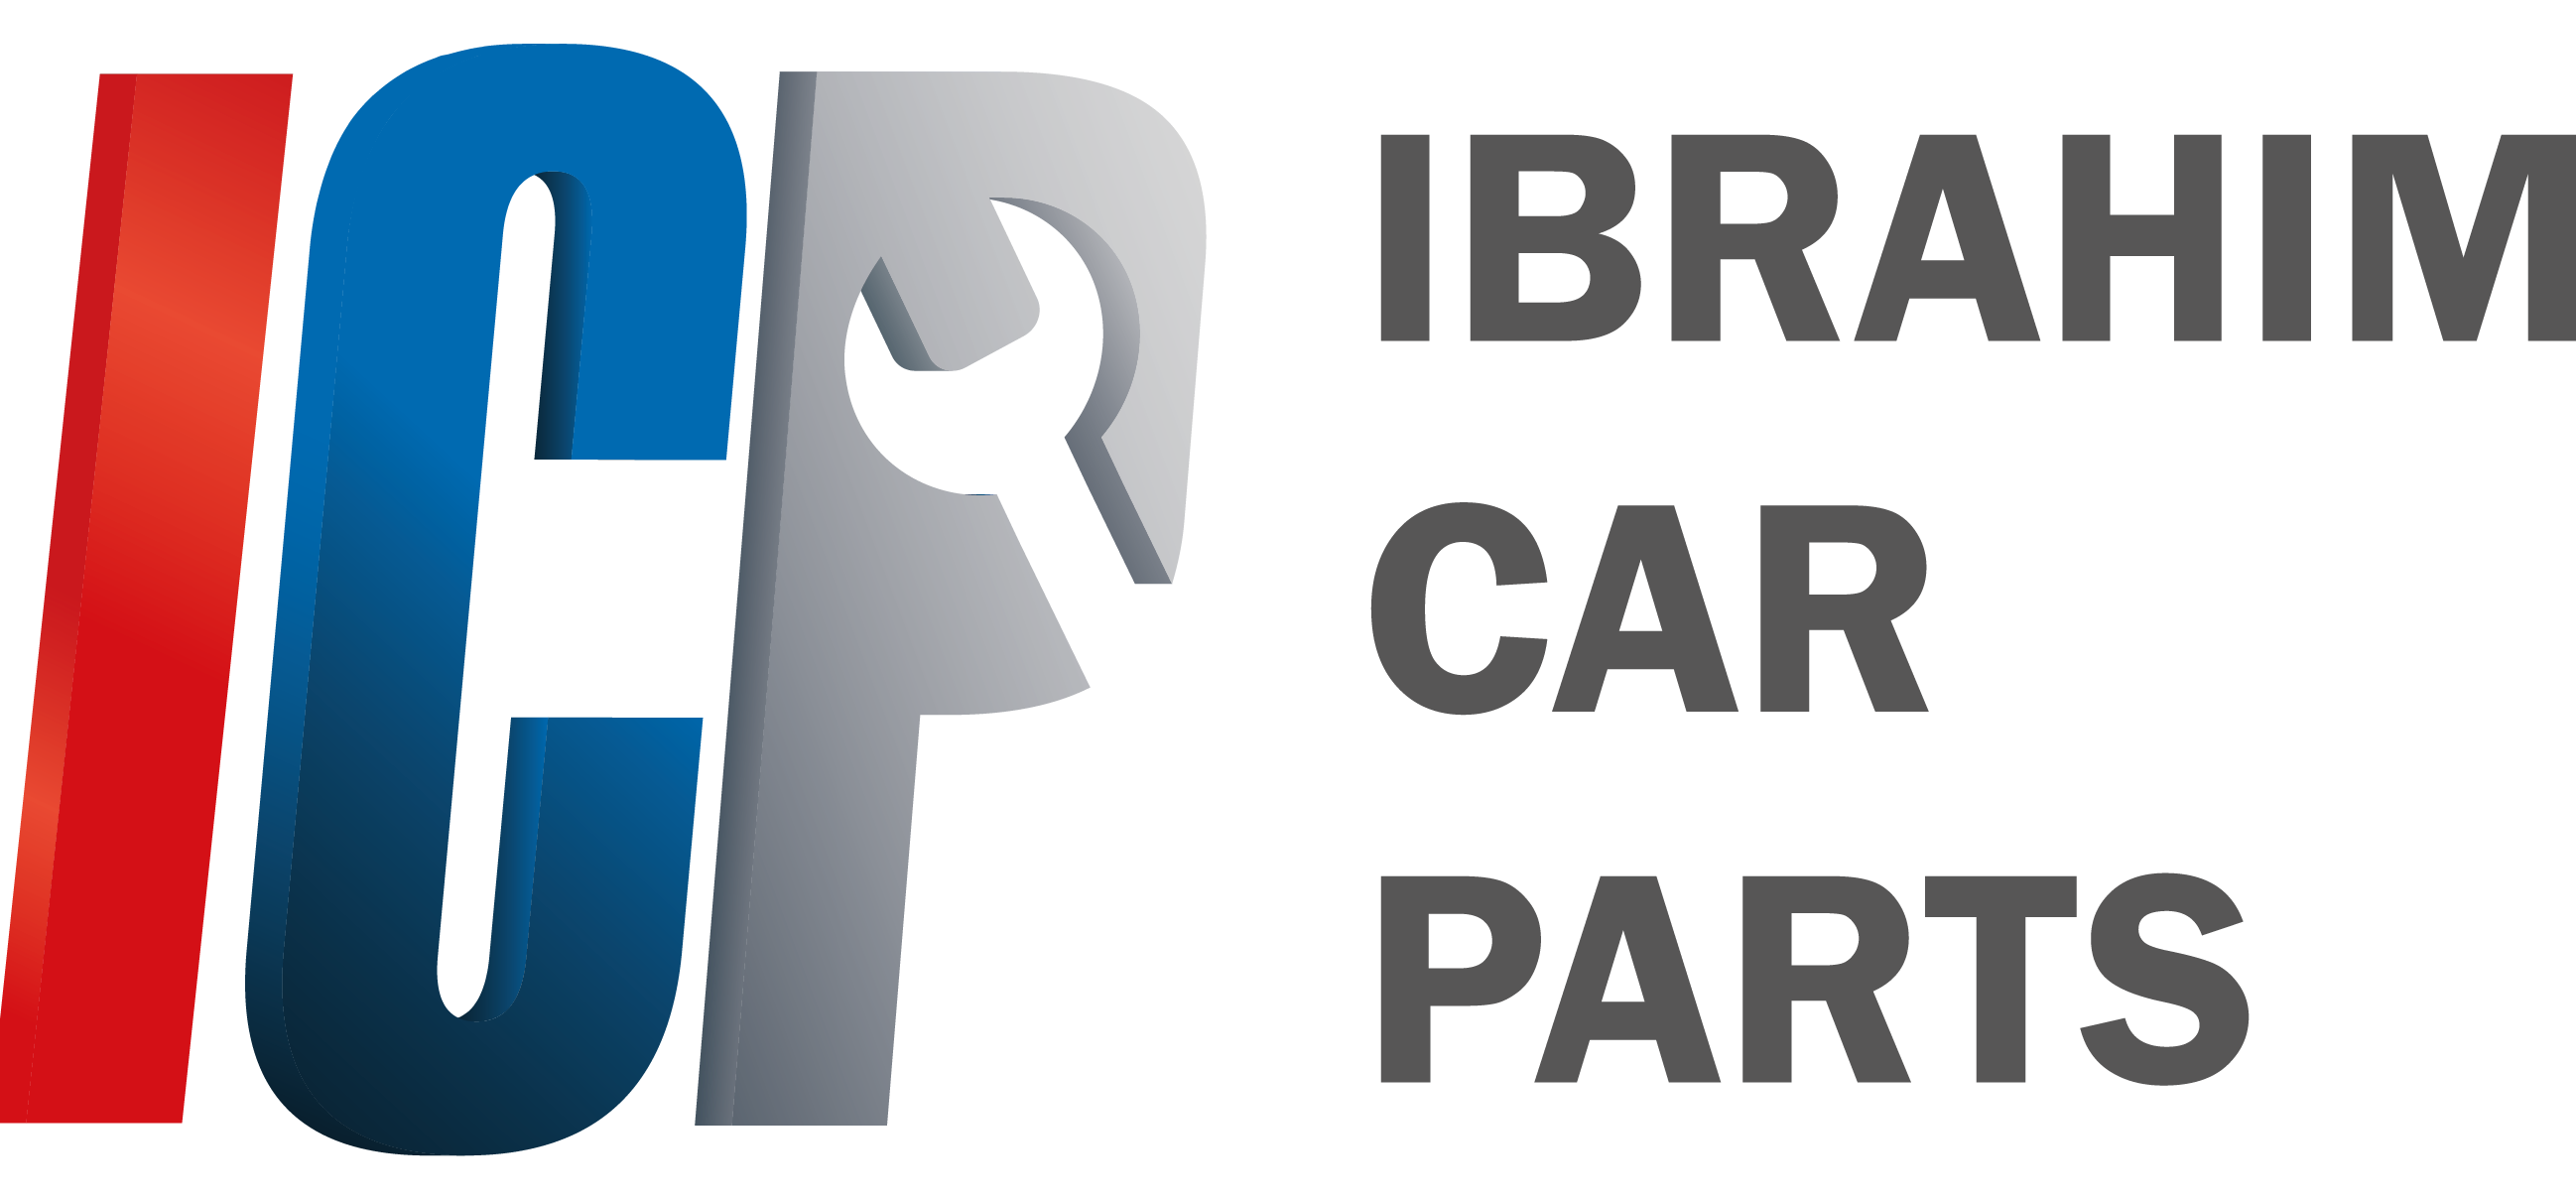 Ibrahim Car Parts GmbH